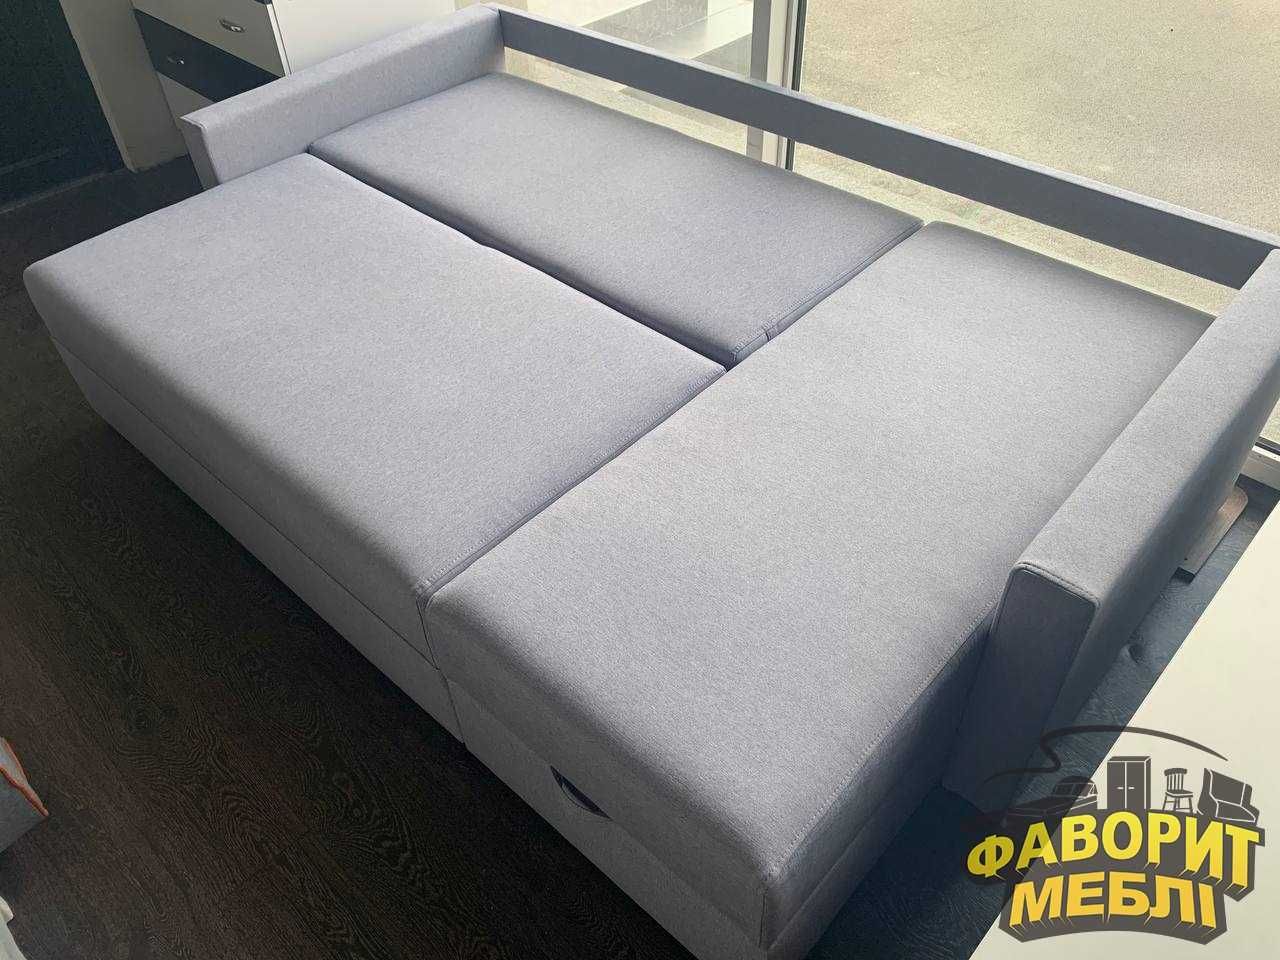 Кутовий диван «Бонус» 240х140 см. В наявності в салоні!